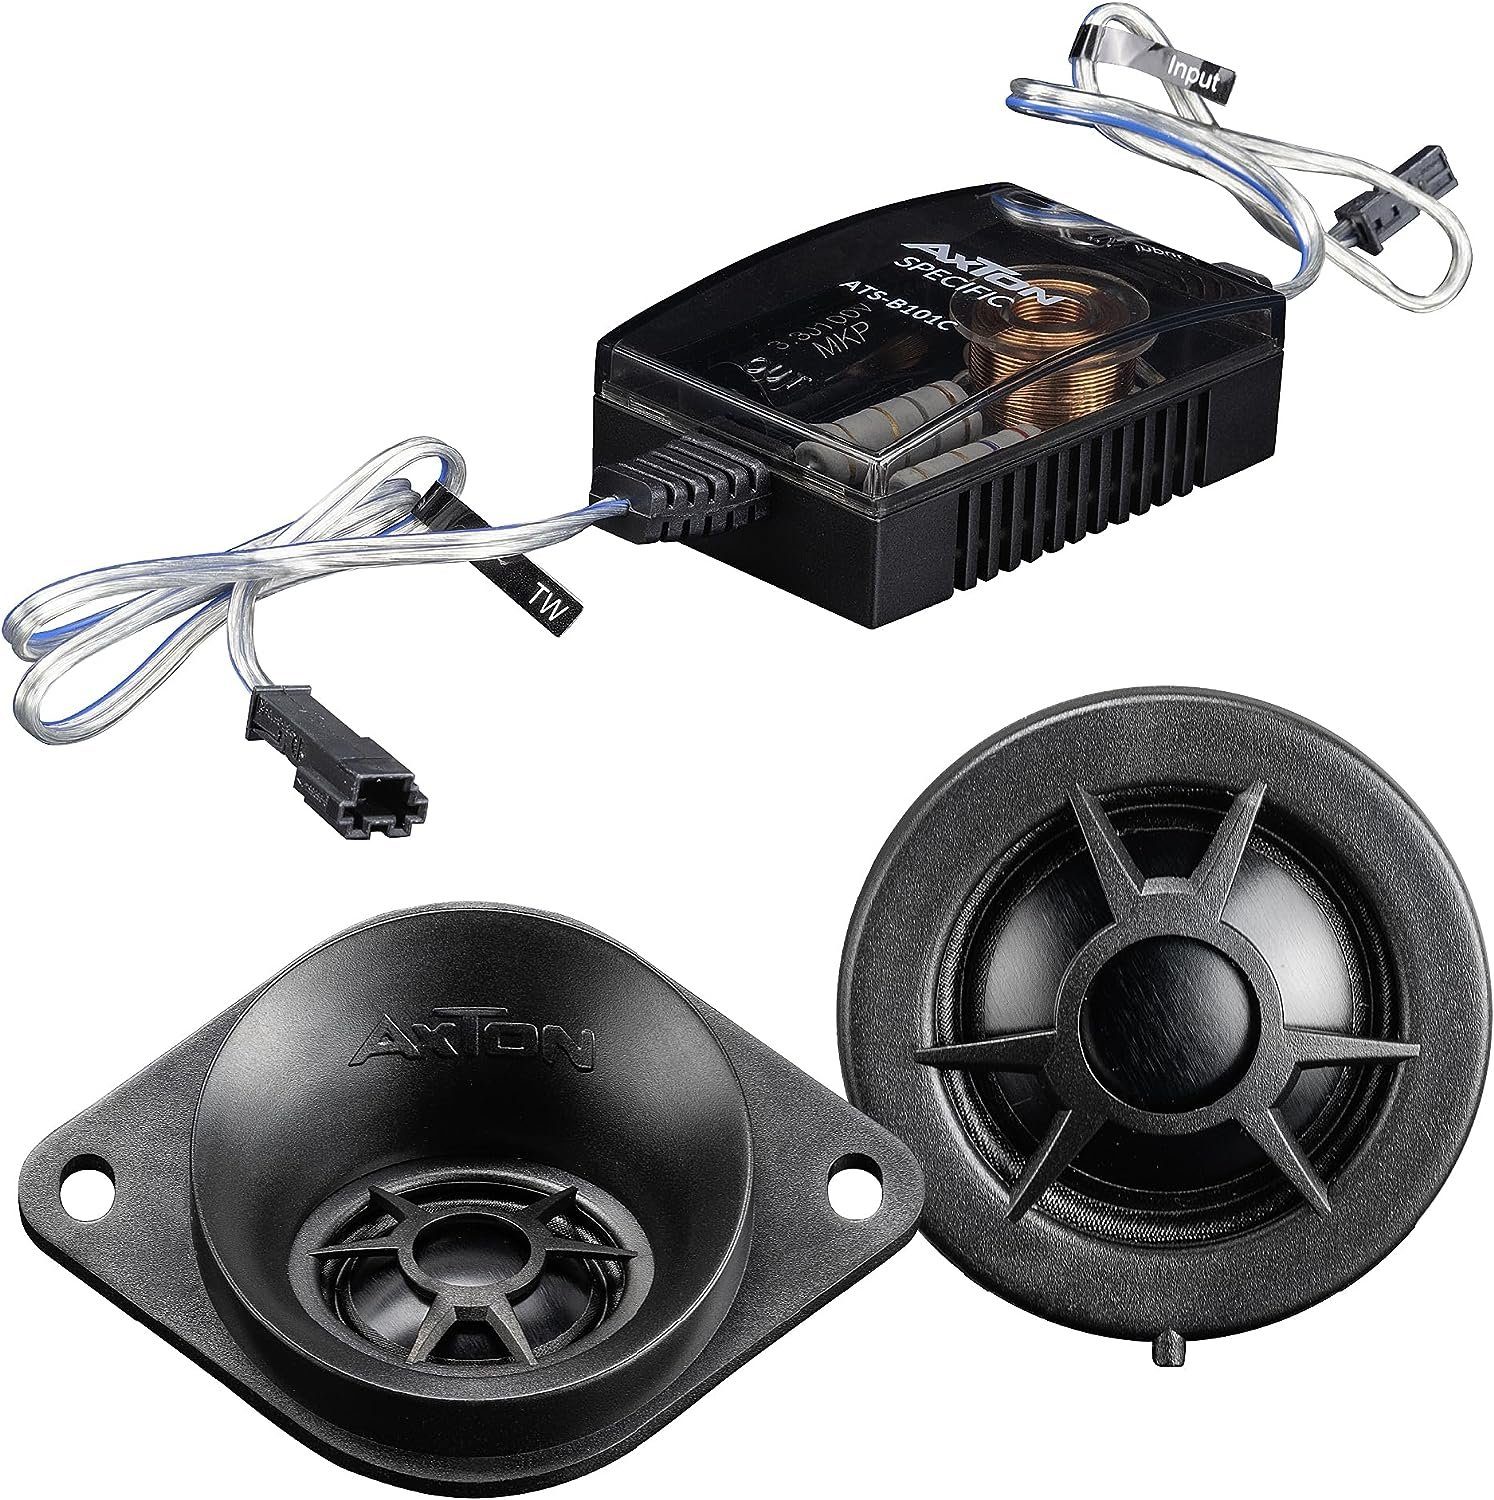 2-Wege-Lautsprecher für BMW Axton Auto-Lautsprecher Axton ATS-B101C